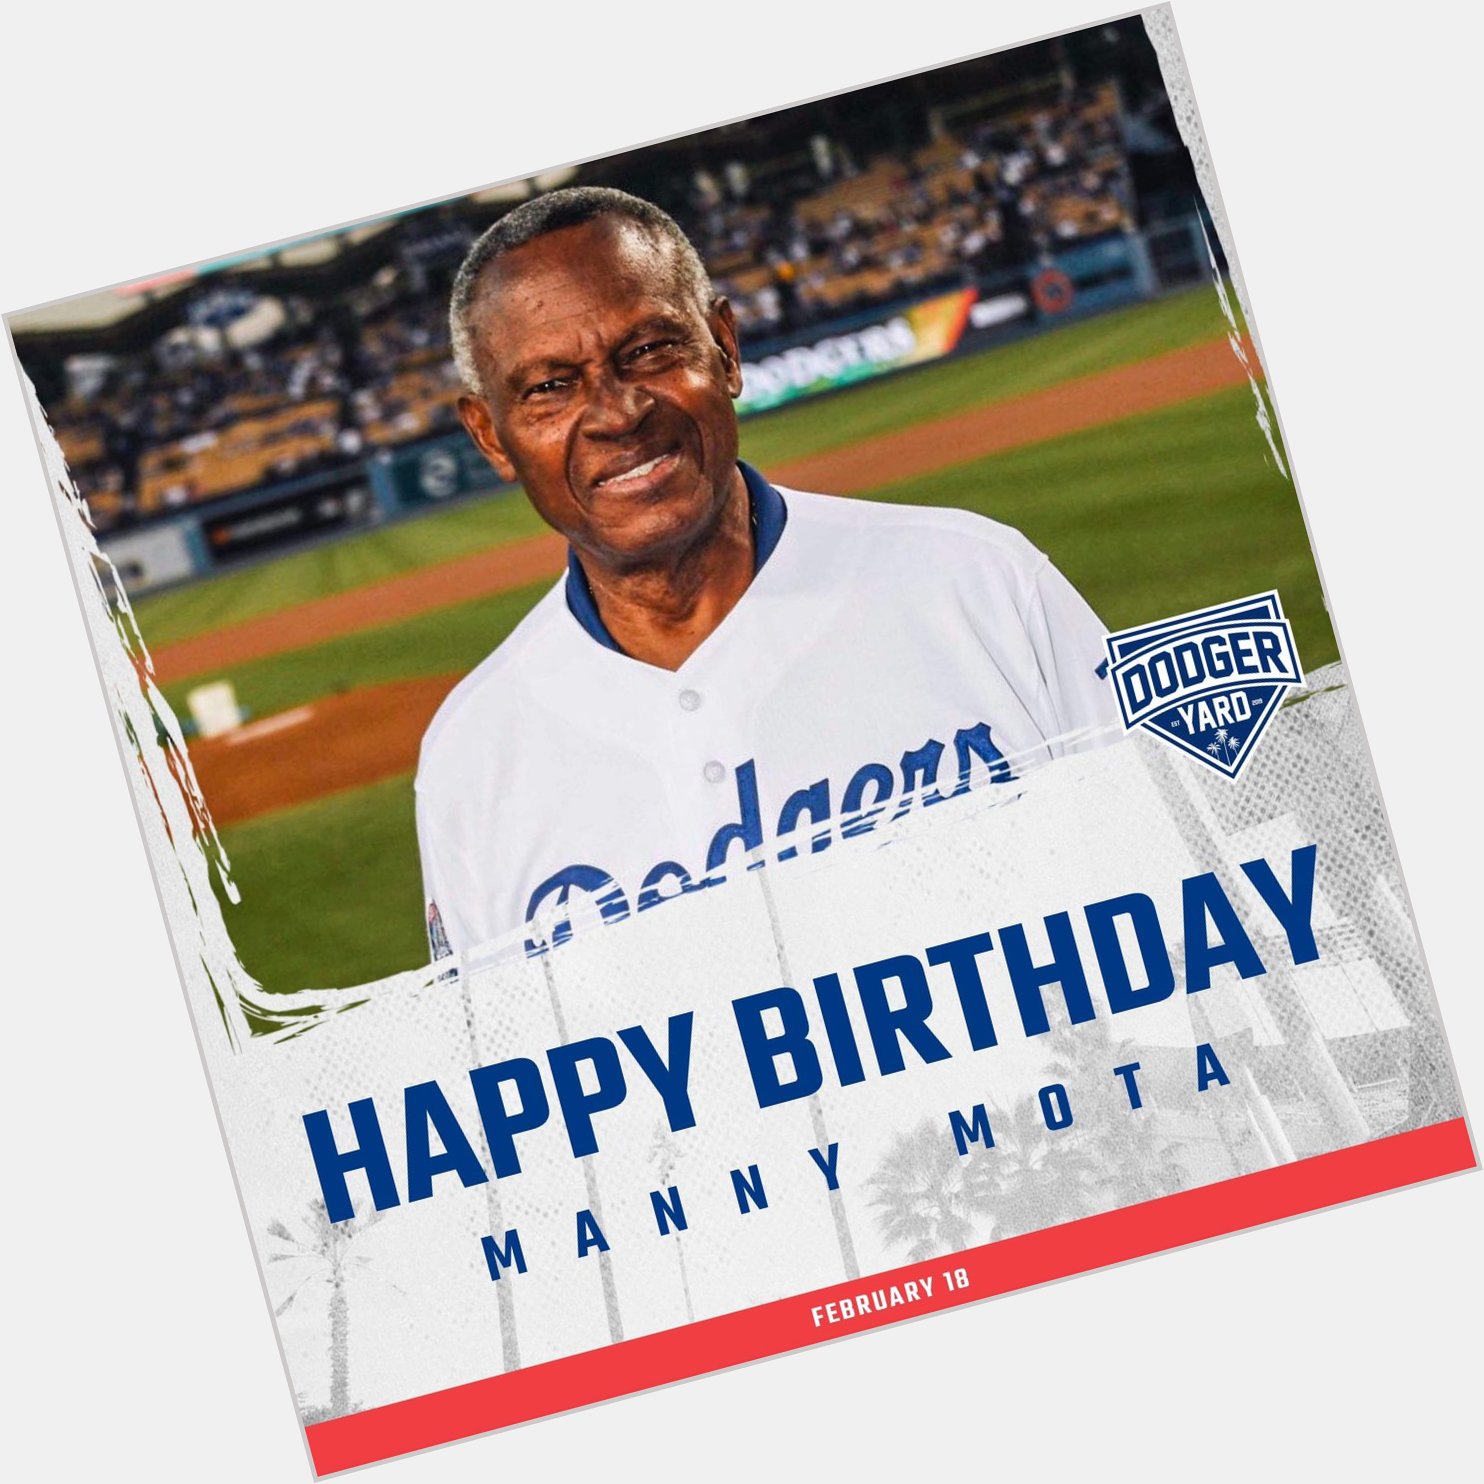 Happy birthday, Manny Mota! 